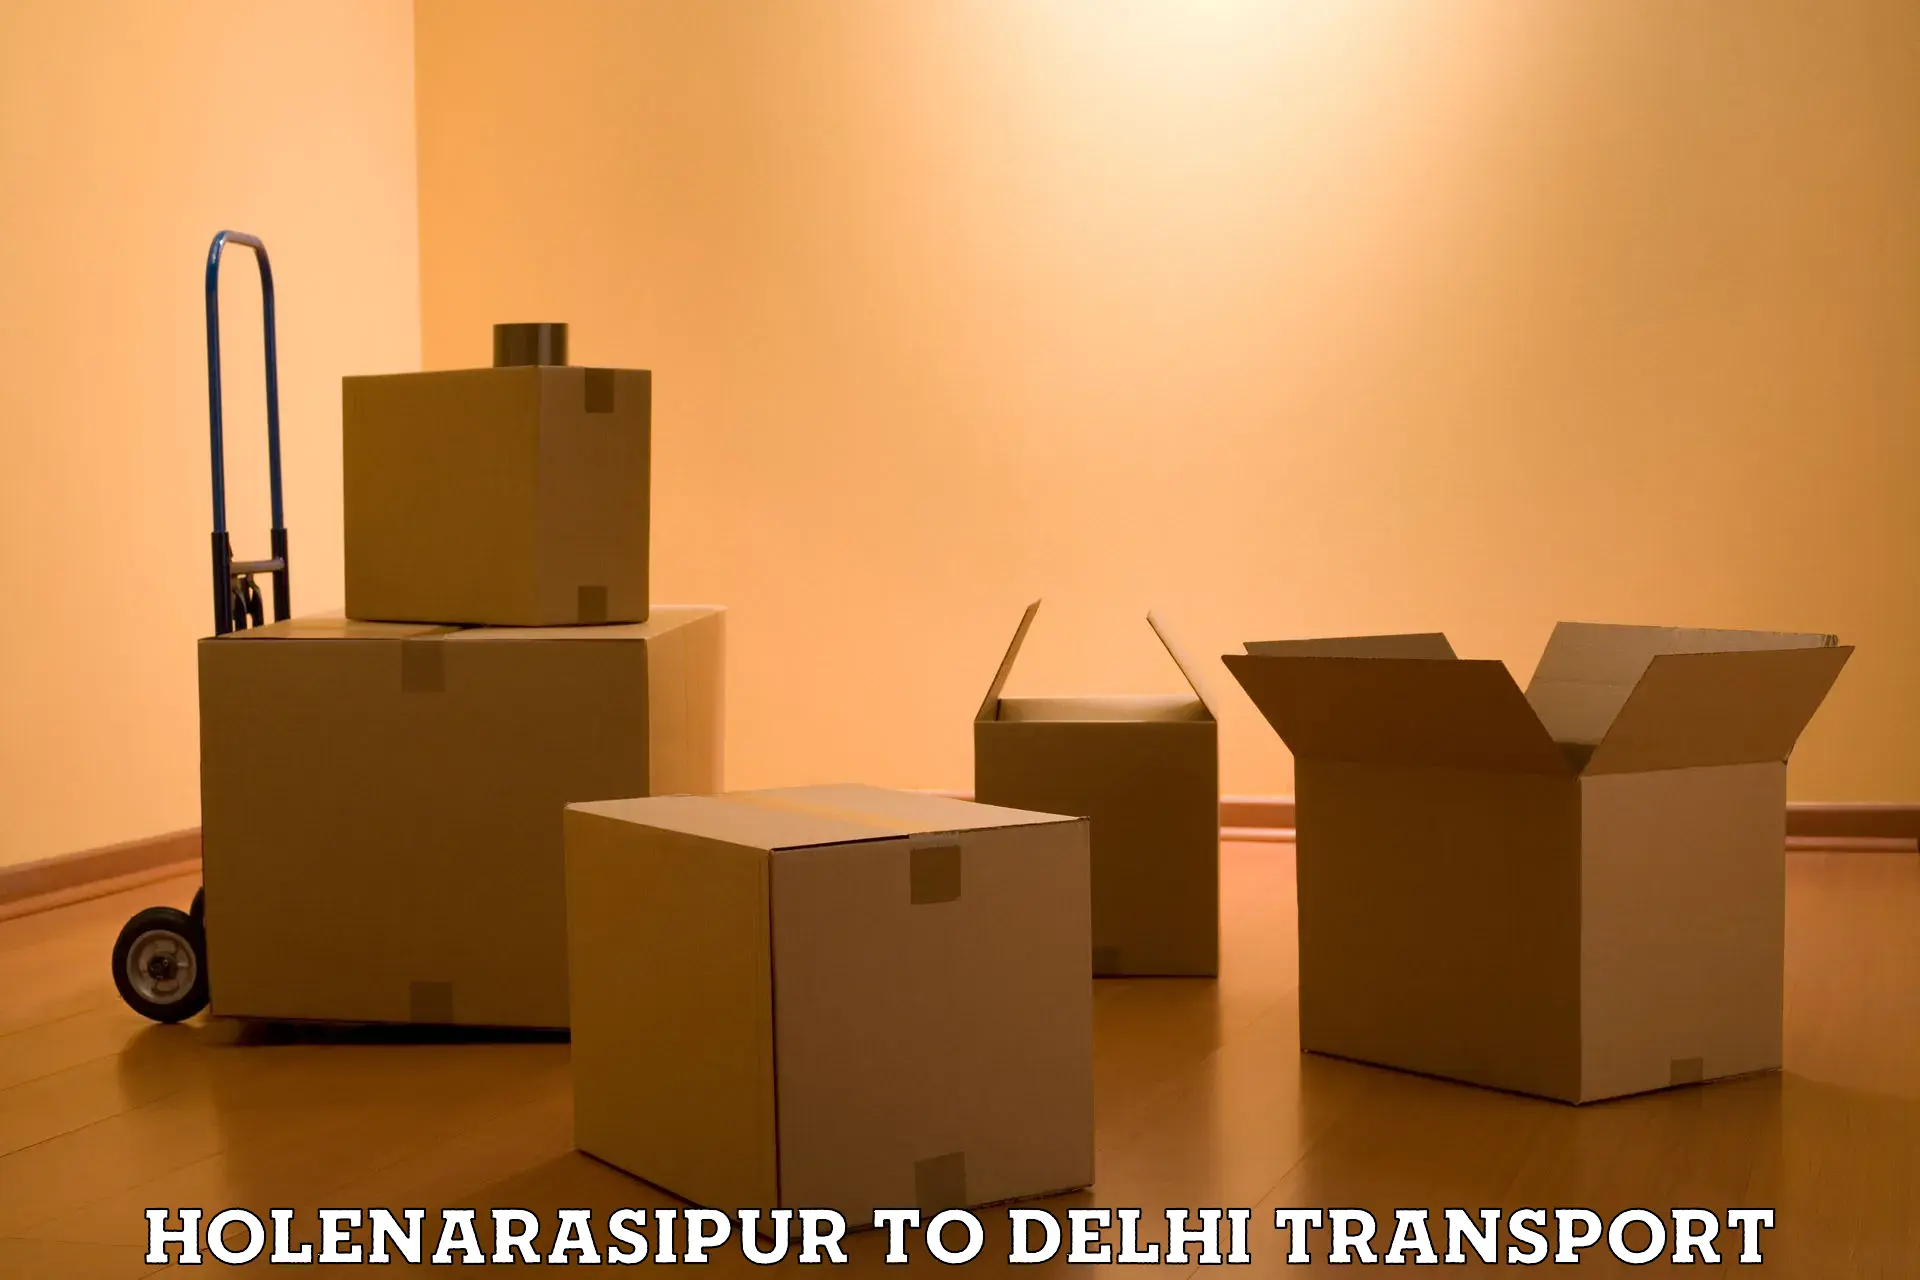 All India transport service Holenarasipur to Jawaharlal Nehru University New Delhi